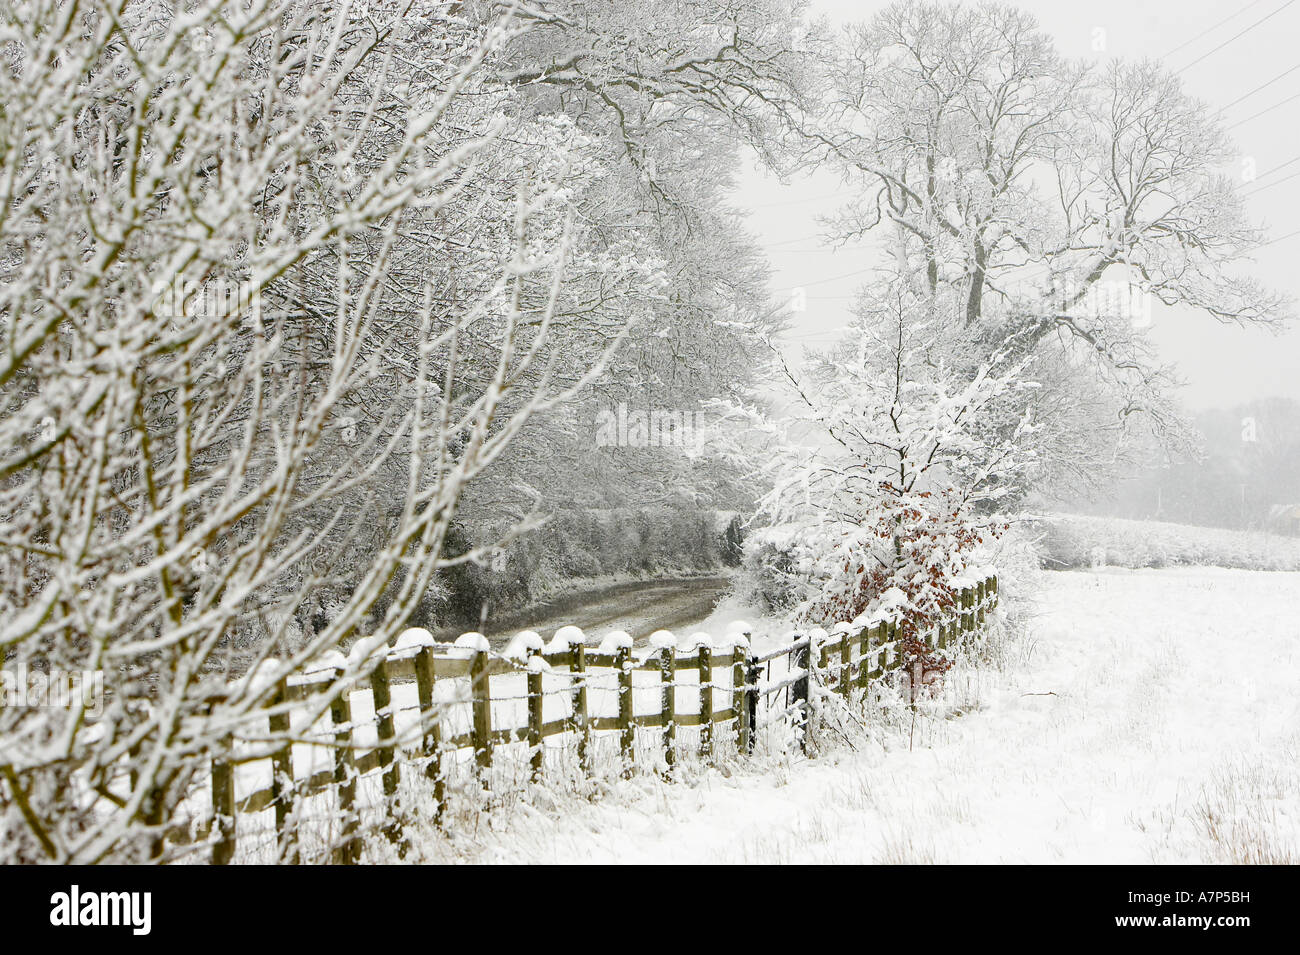 Carretera cubierta de nieve en invierno, Inglaterra, Reino Unido Foto de stock